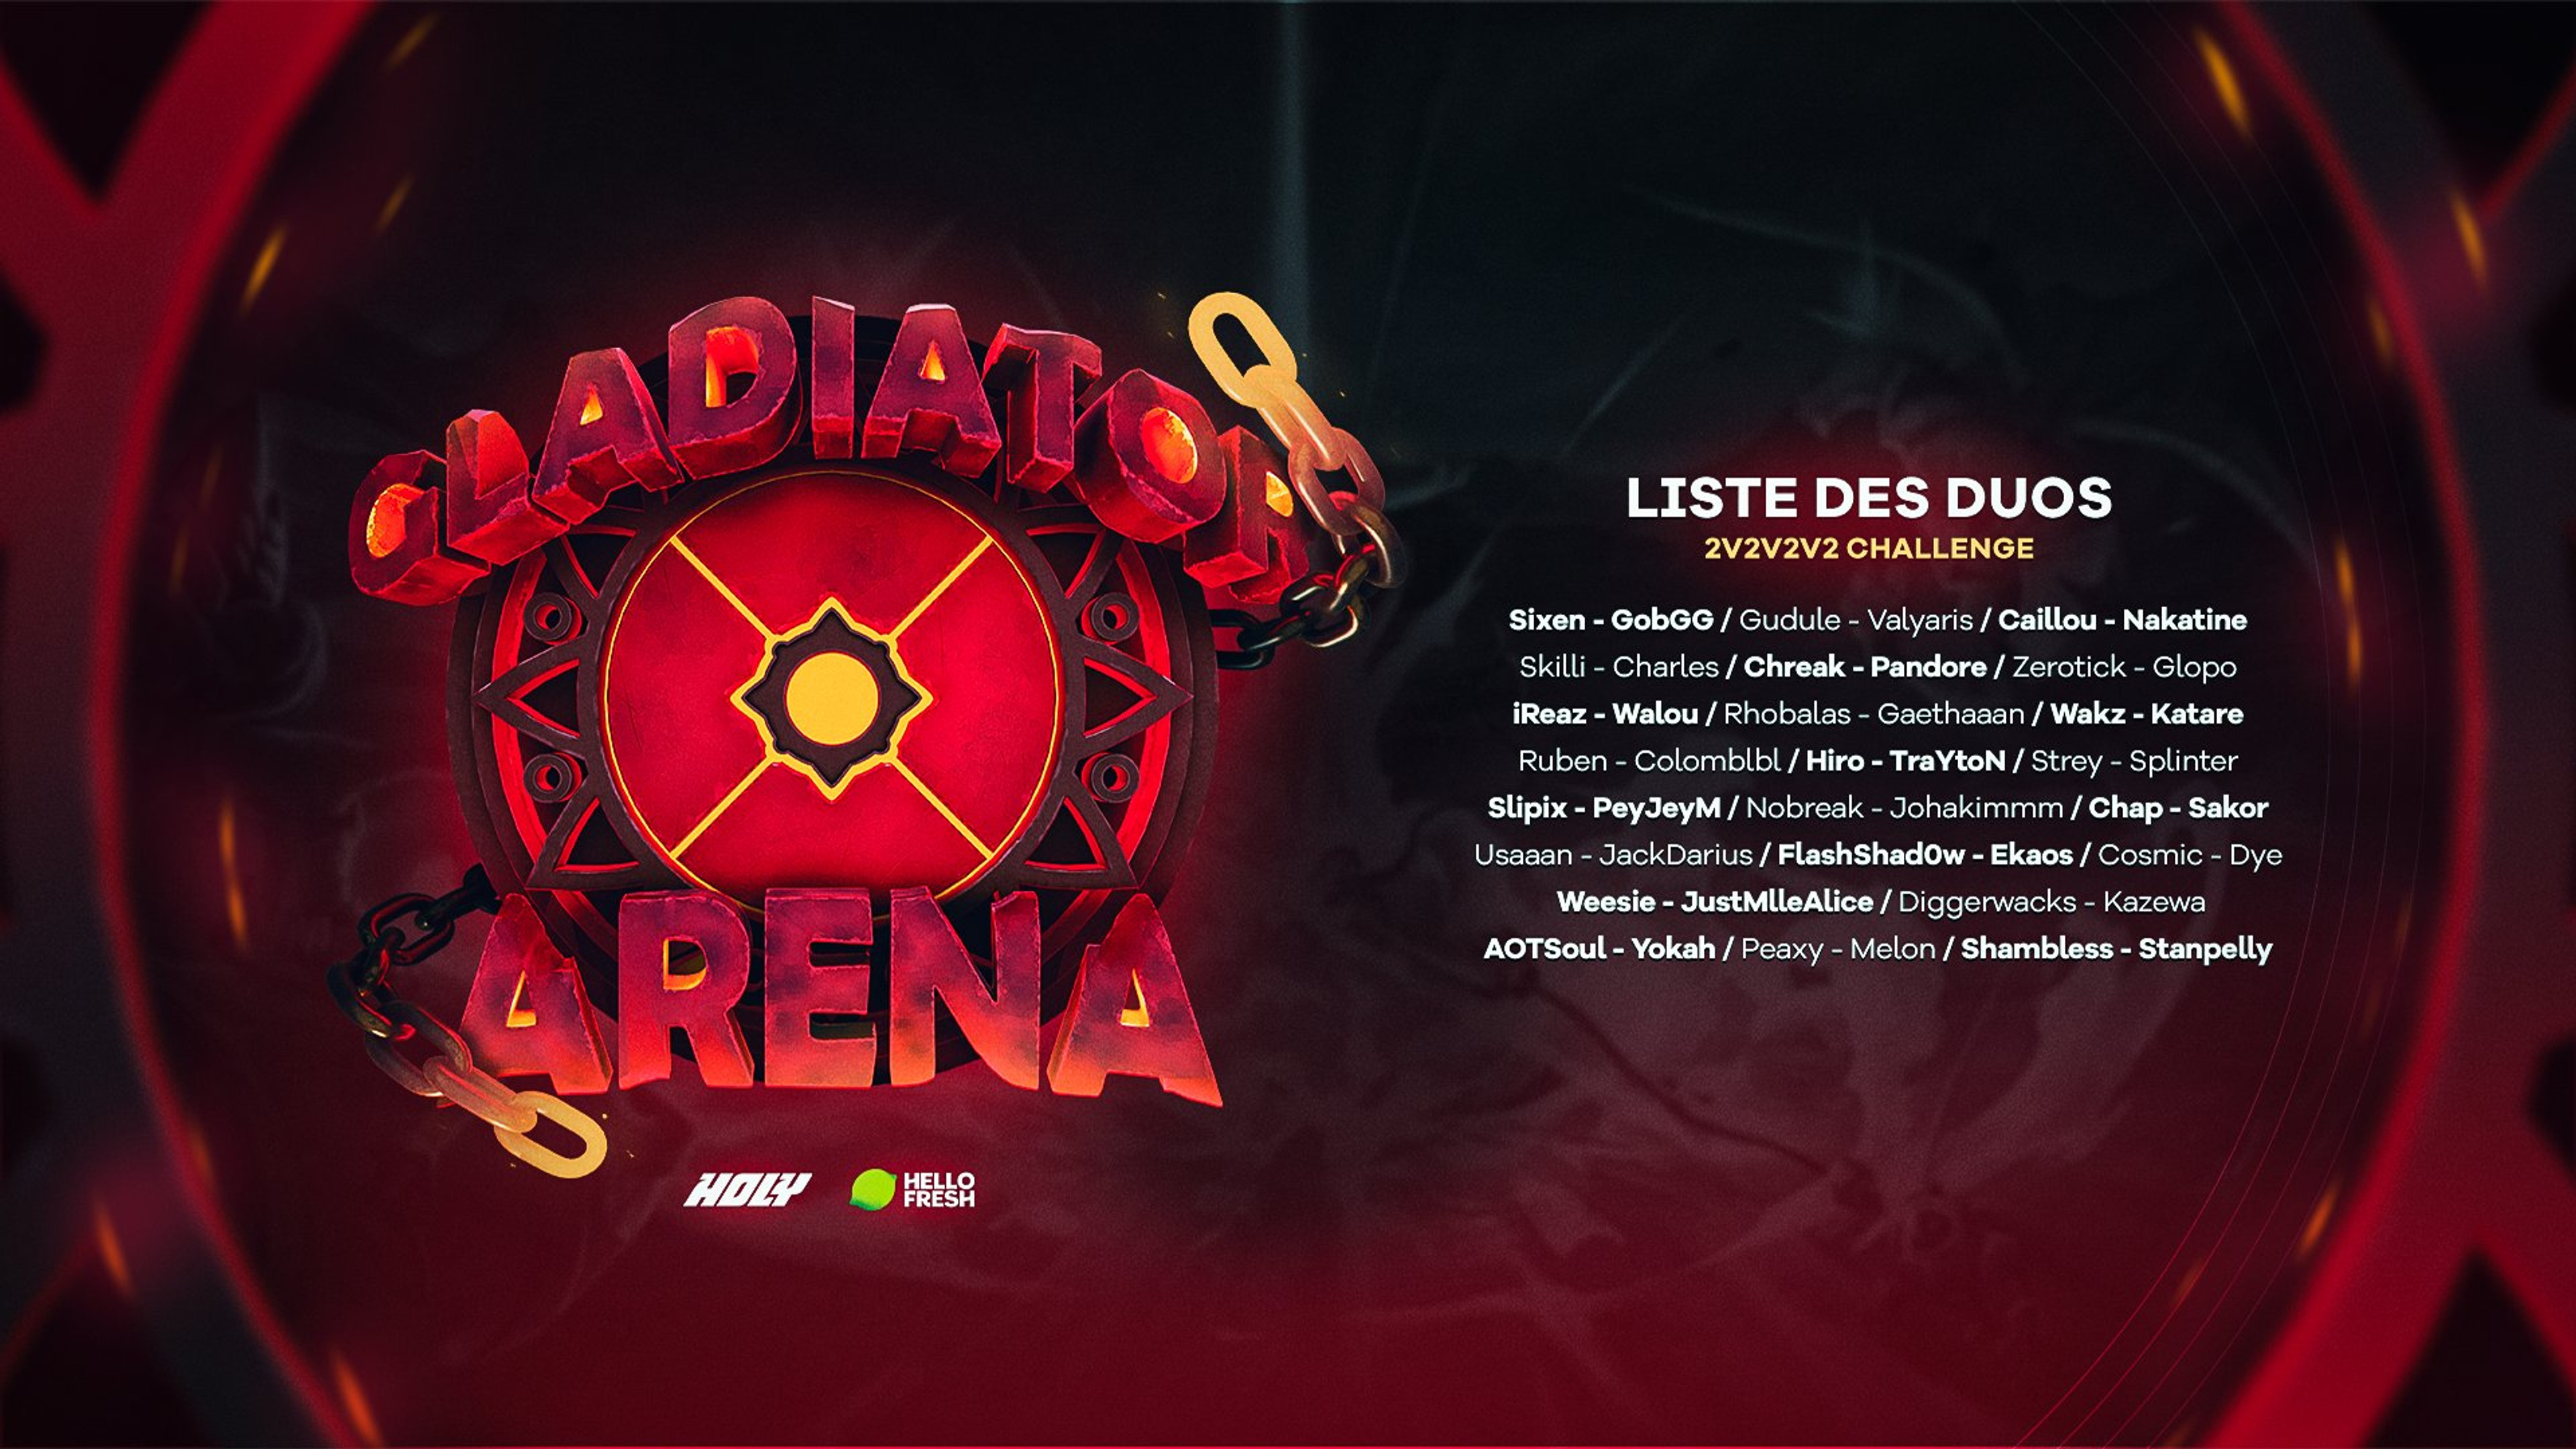 gladiators-arena-team-du-sud-participants-2v2v2v2-arena-league-of-legends